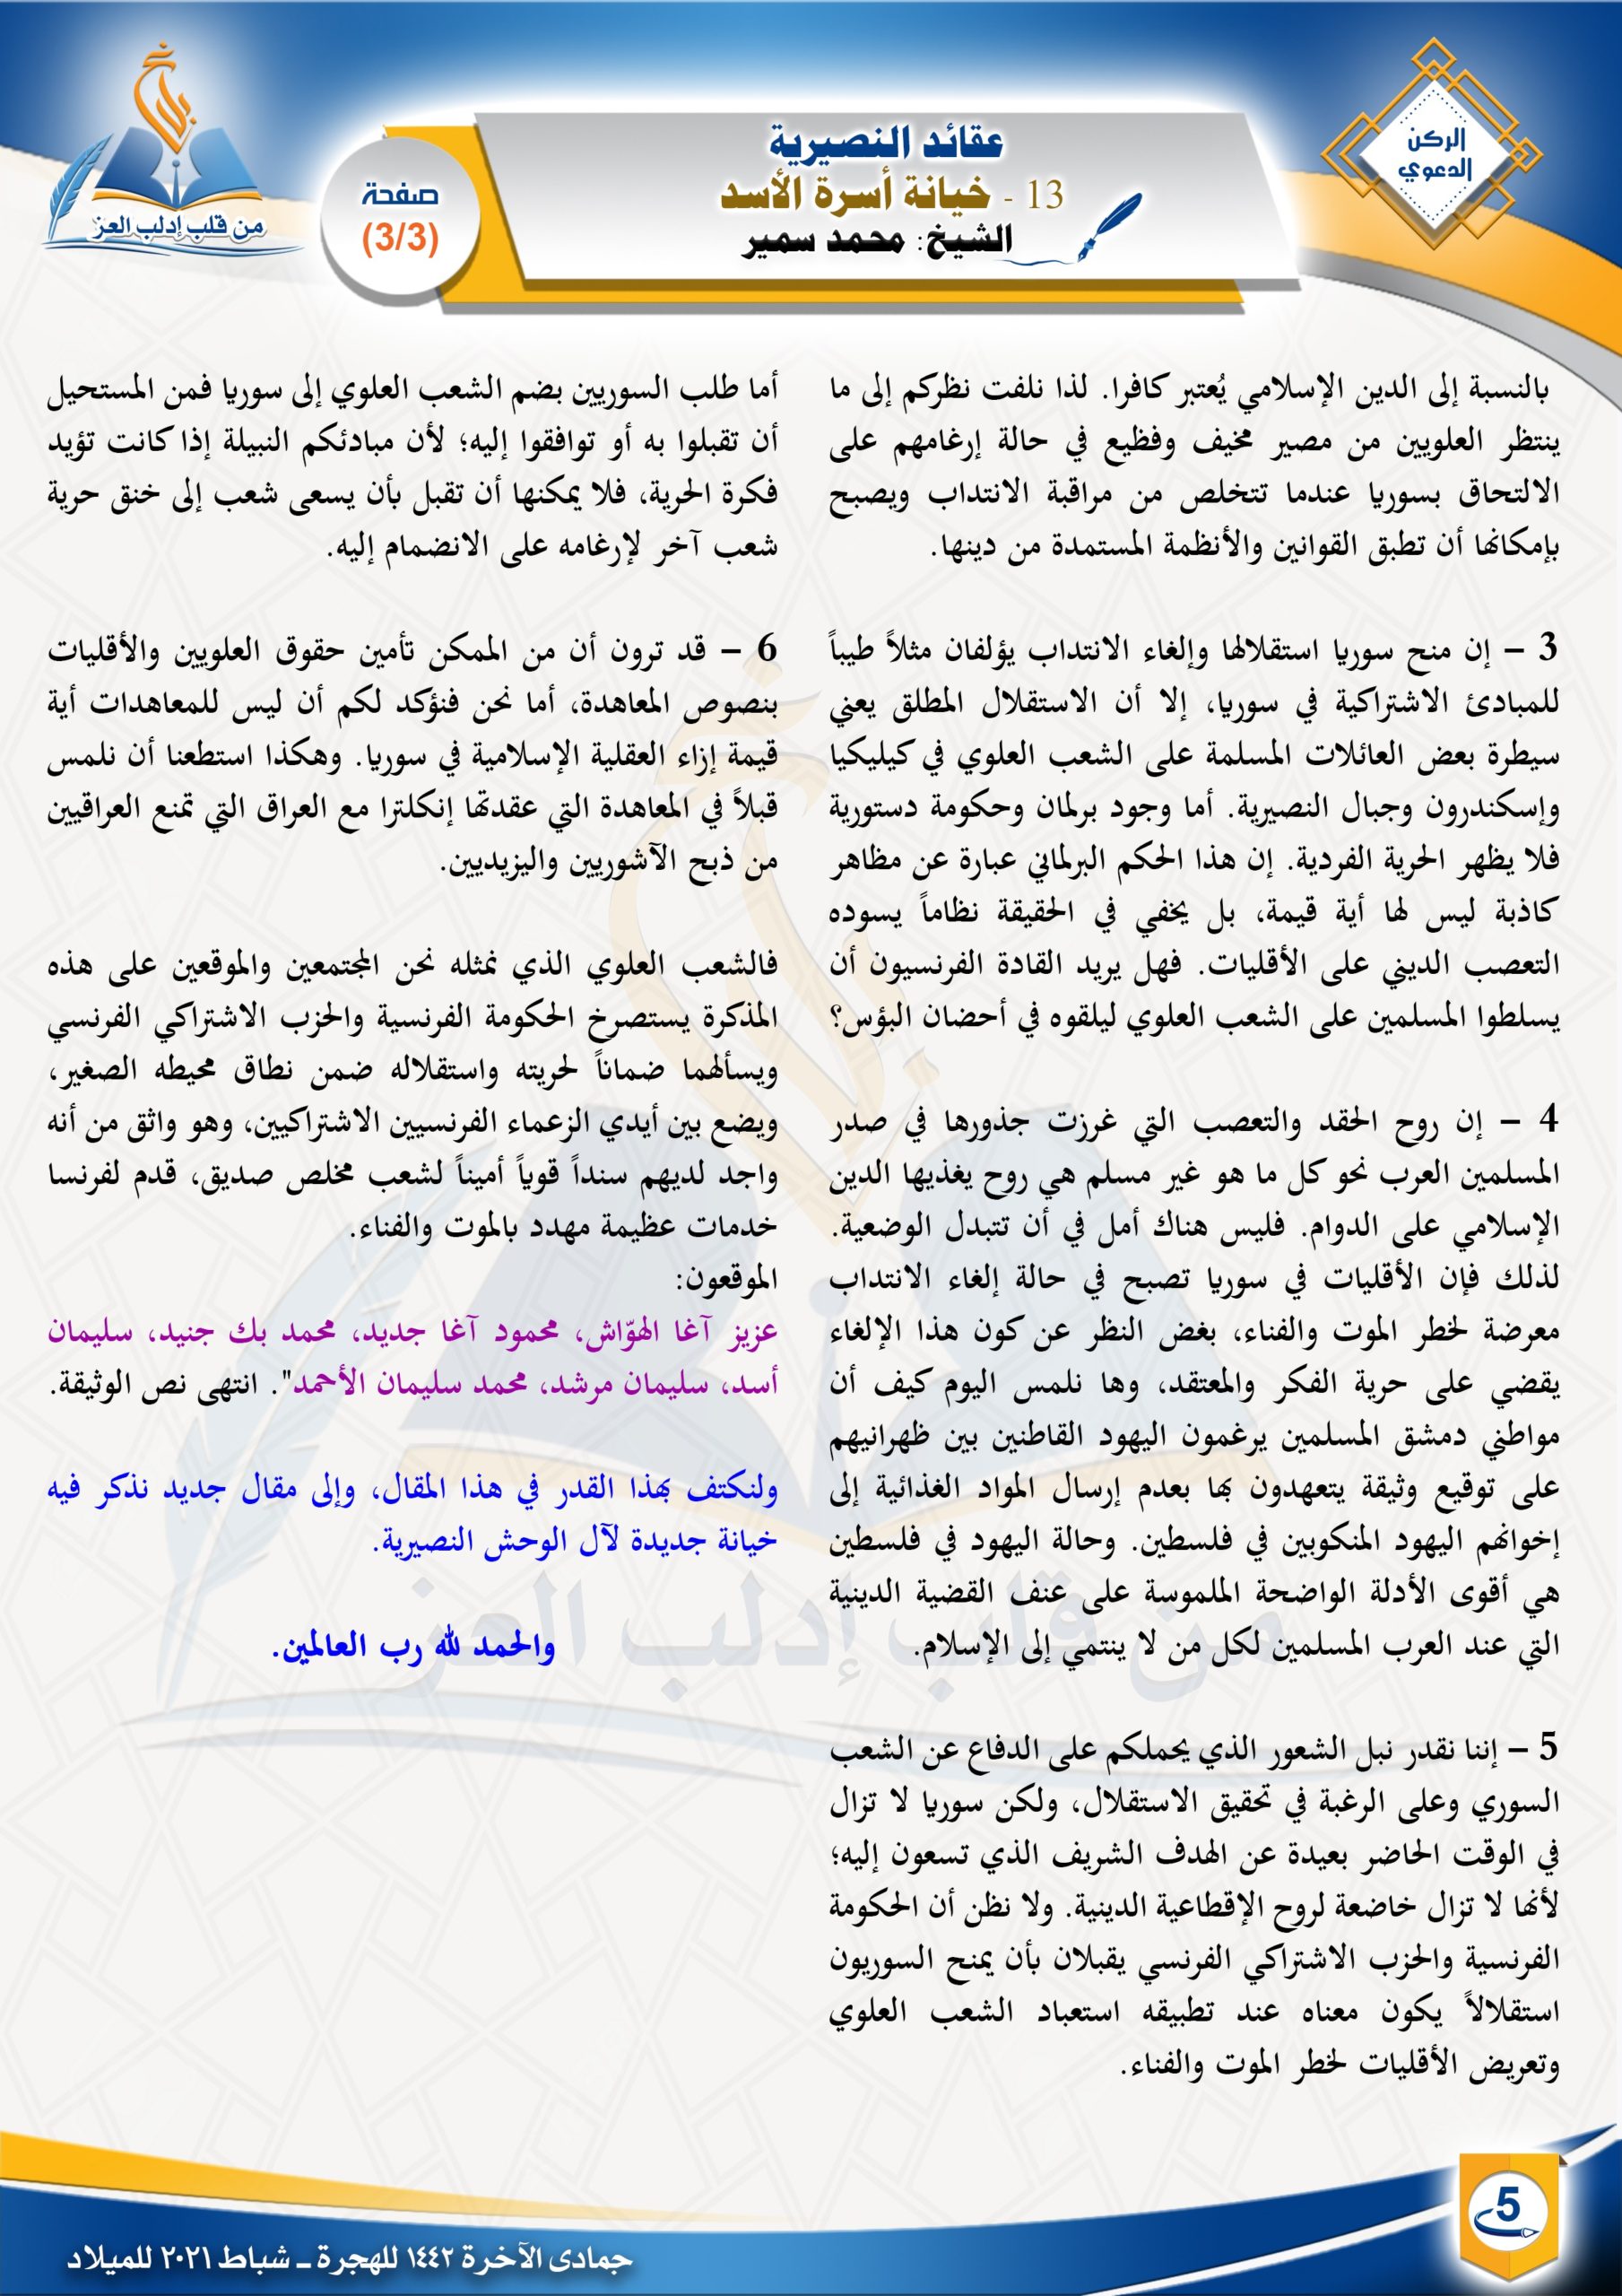 خيانة أسرة الأسد |الركن الدعوي| مجلة بلاغ العدد 20 جمادى الآخرة 1442 الشيخ محمد سمير